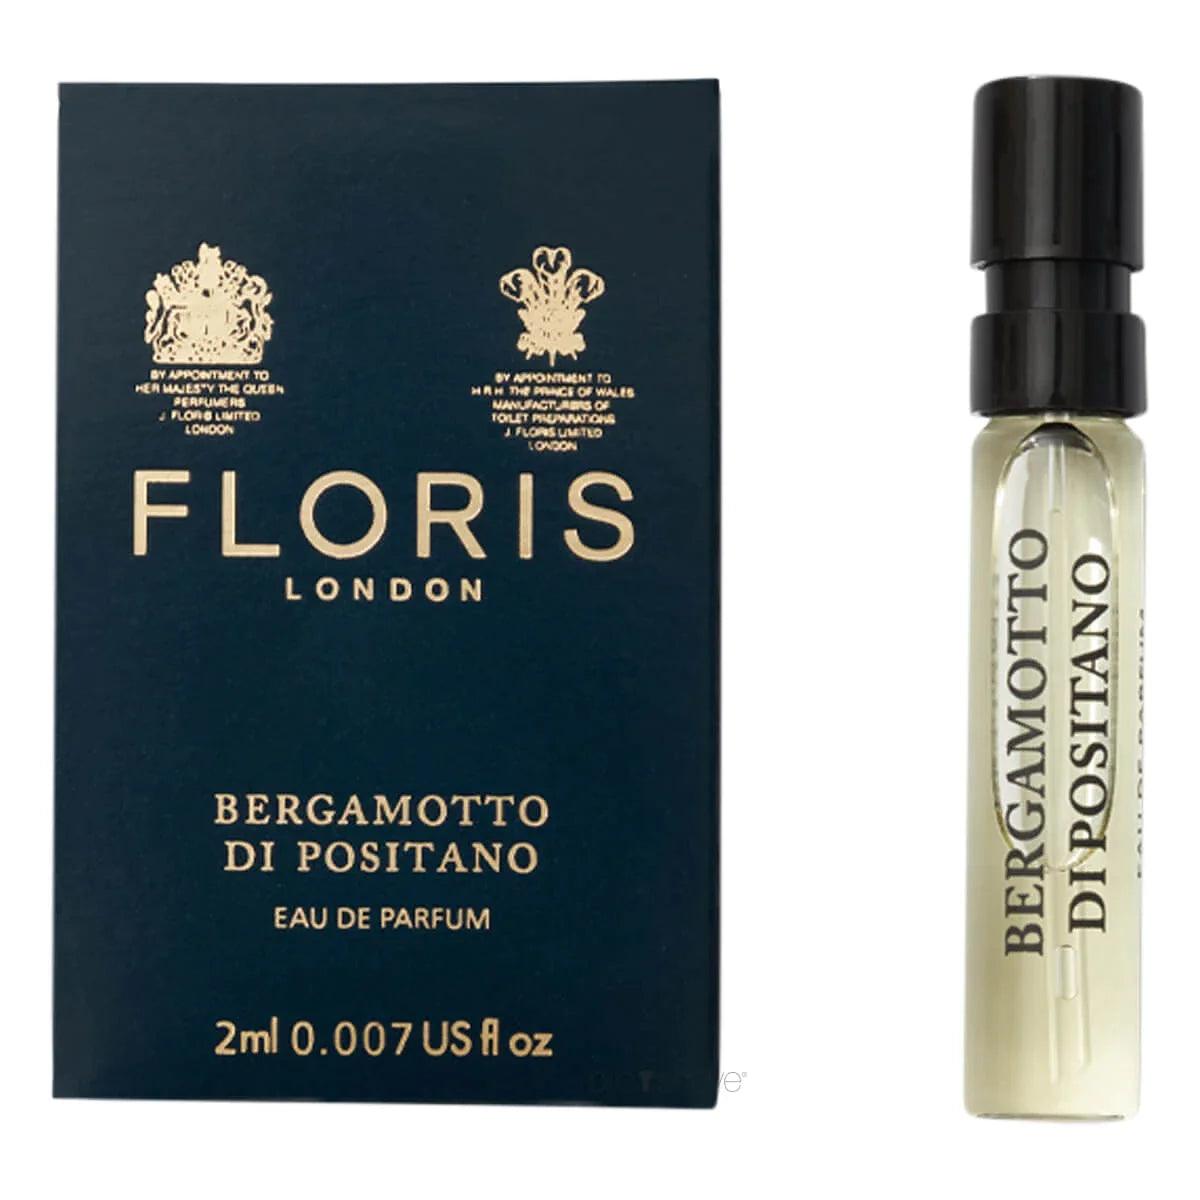 Floris Bergamotto di Positano, Eau de Parfum, 2 ml | Parfyme | Floris London | JK SHOP | JK Barber og herre frisør | Lavepriser | Best